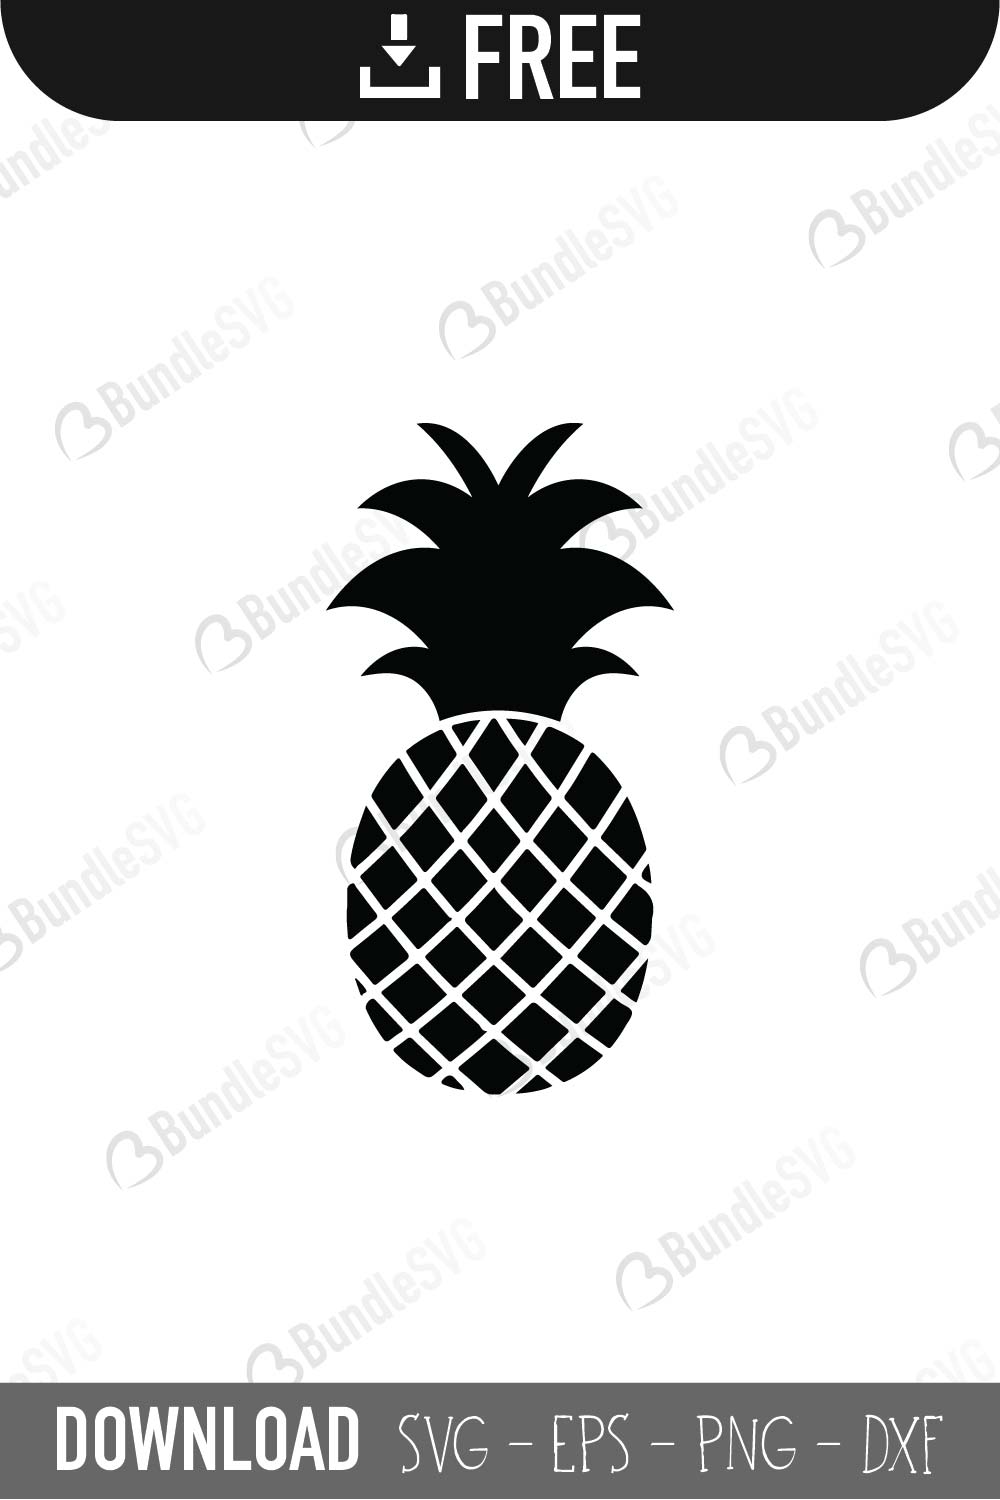 Download Free Pineapple SVG Cut Files | BundleSVG